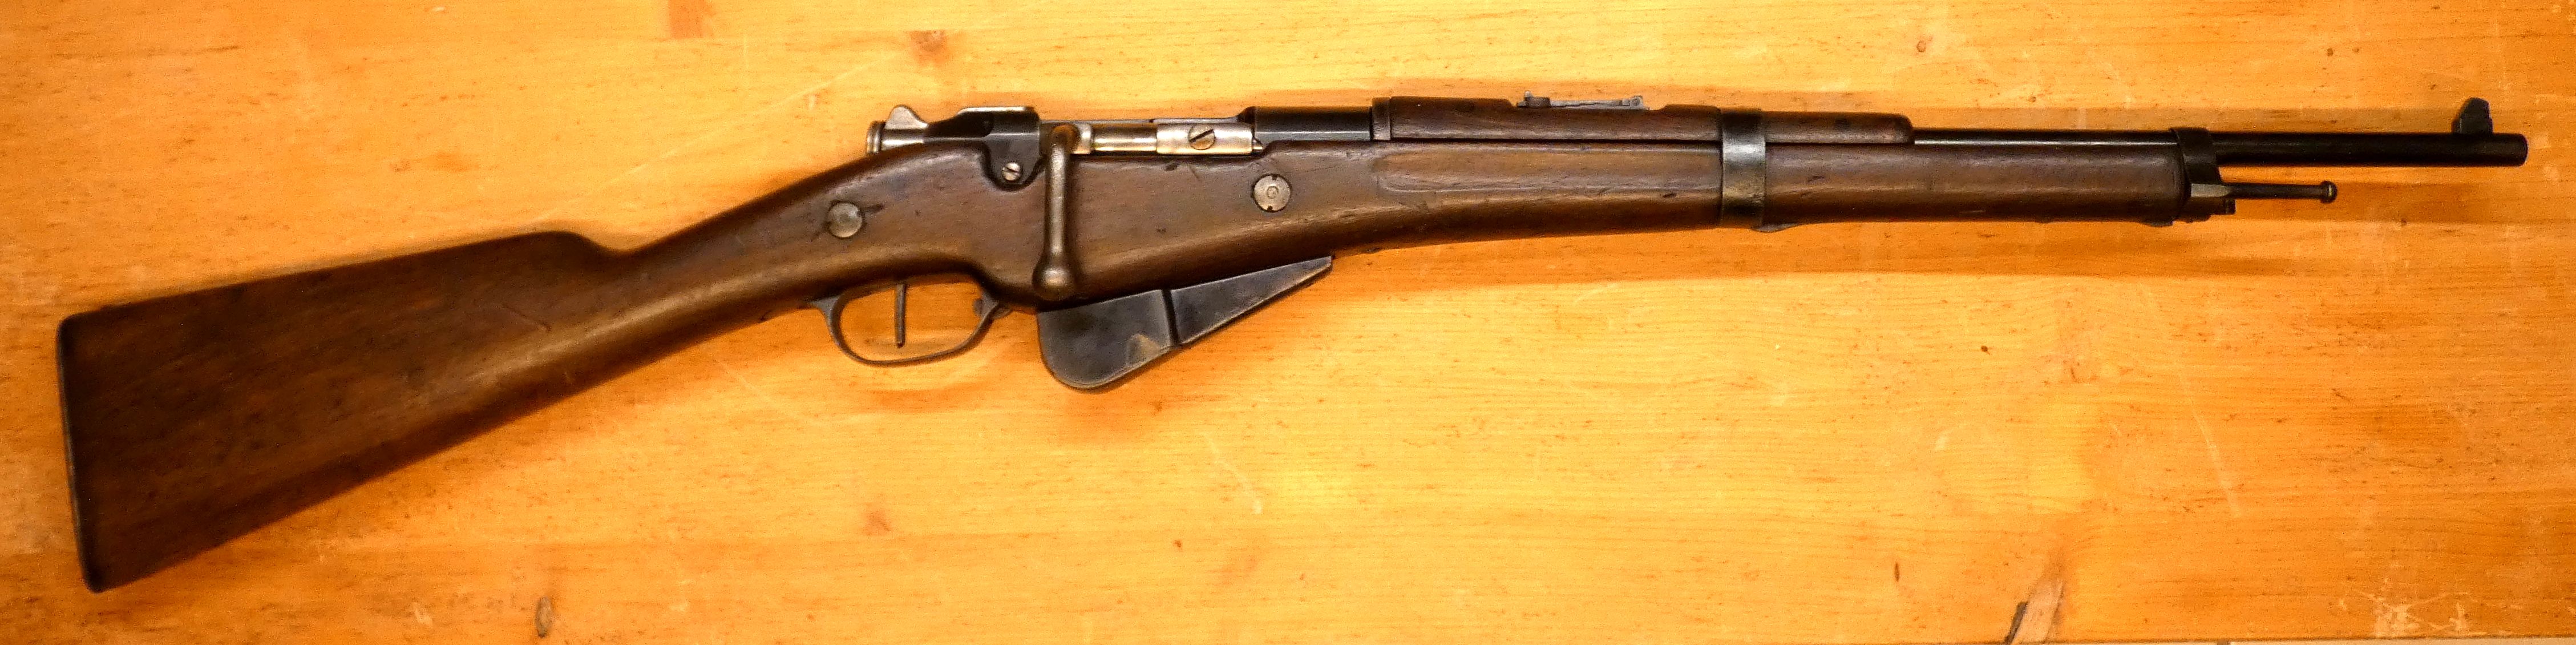 présentation d'une carabine Mle 1890 transformée 1916 20